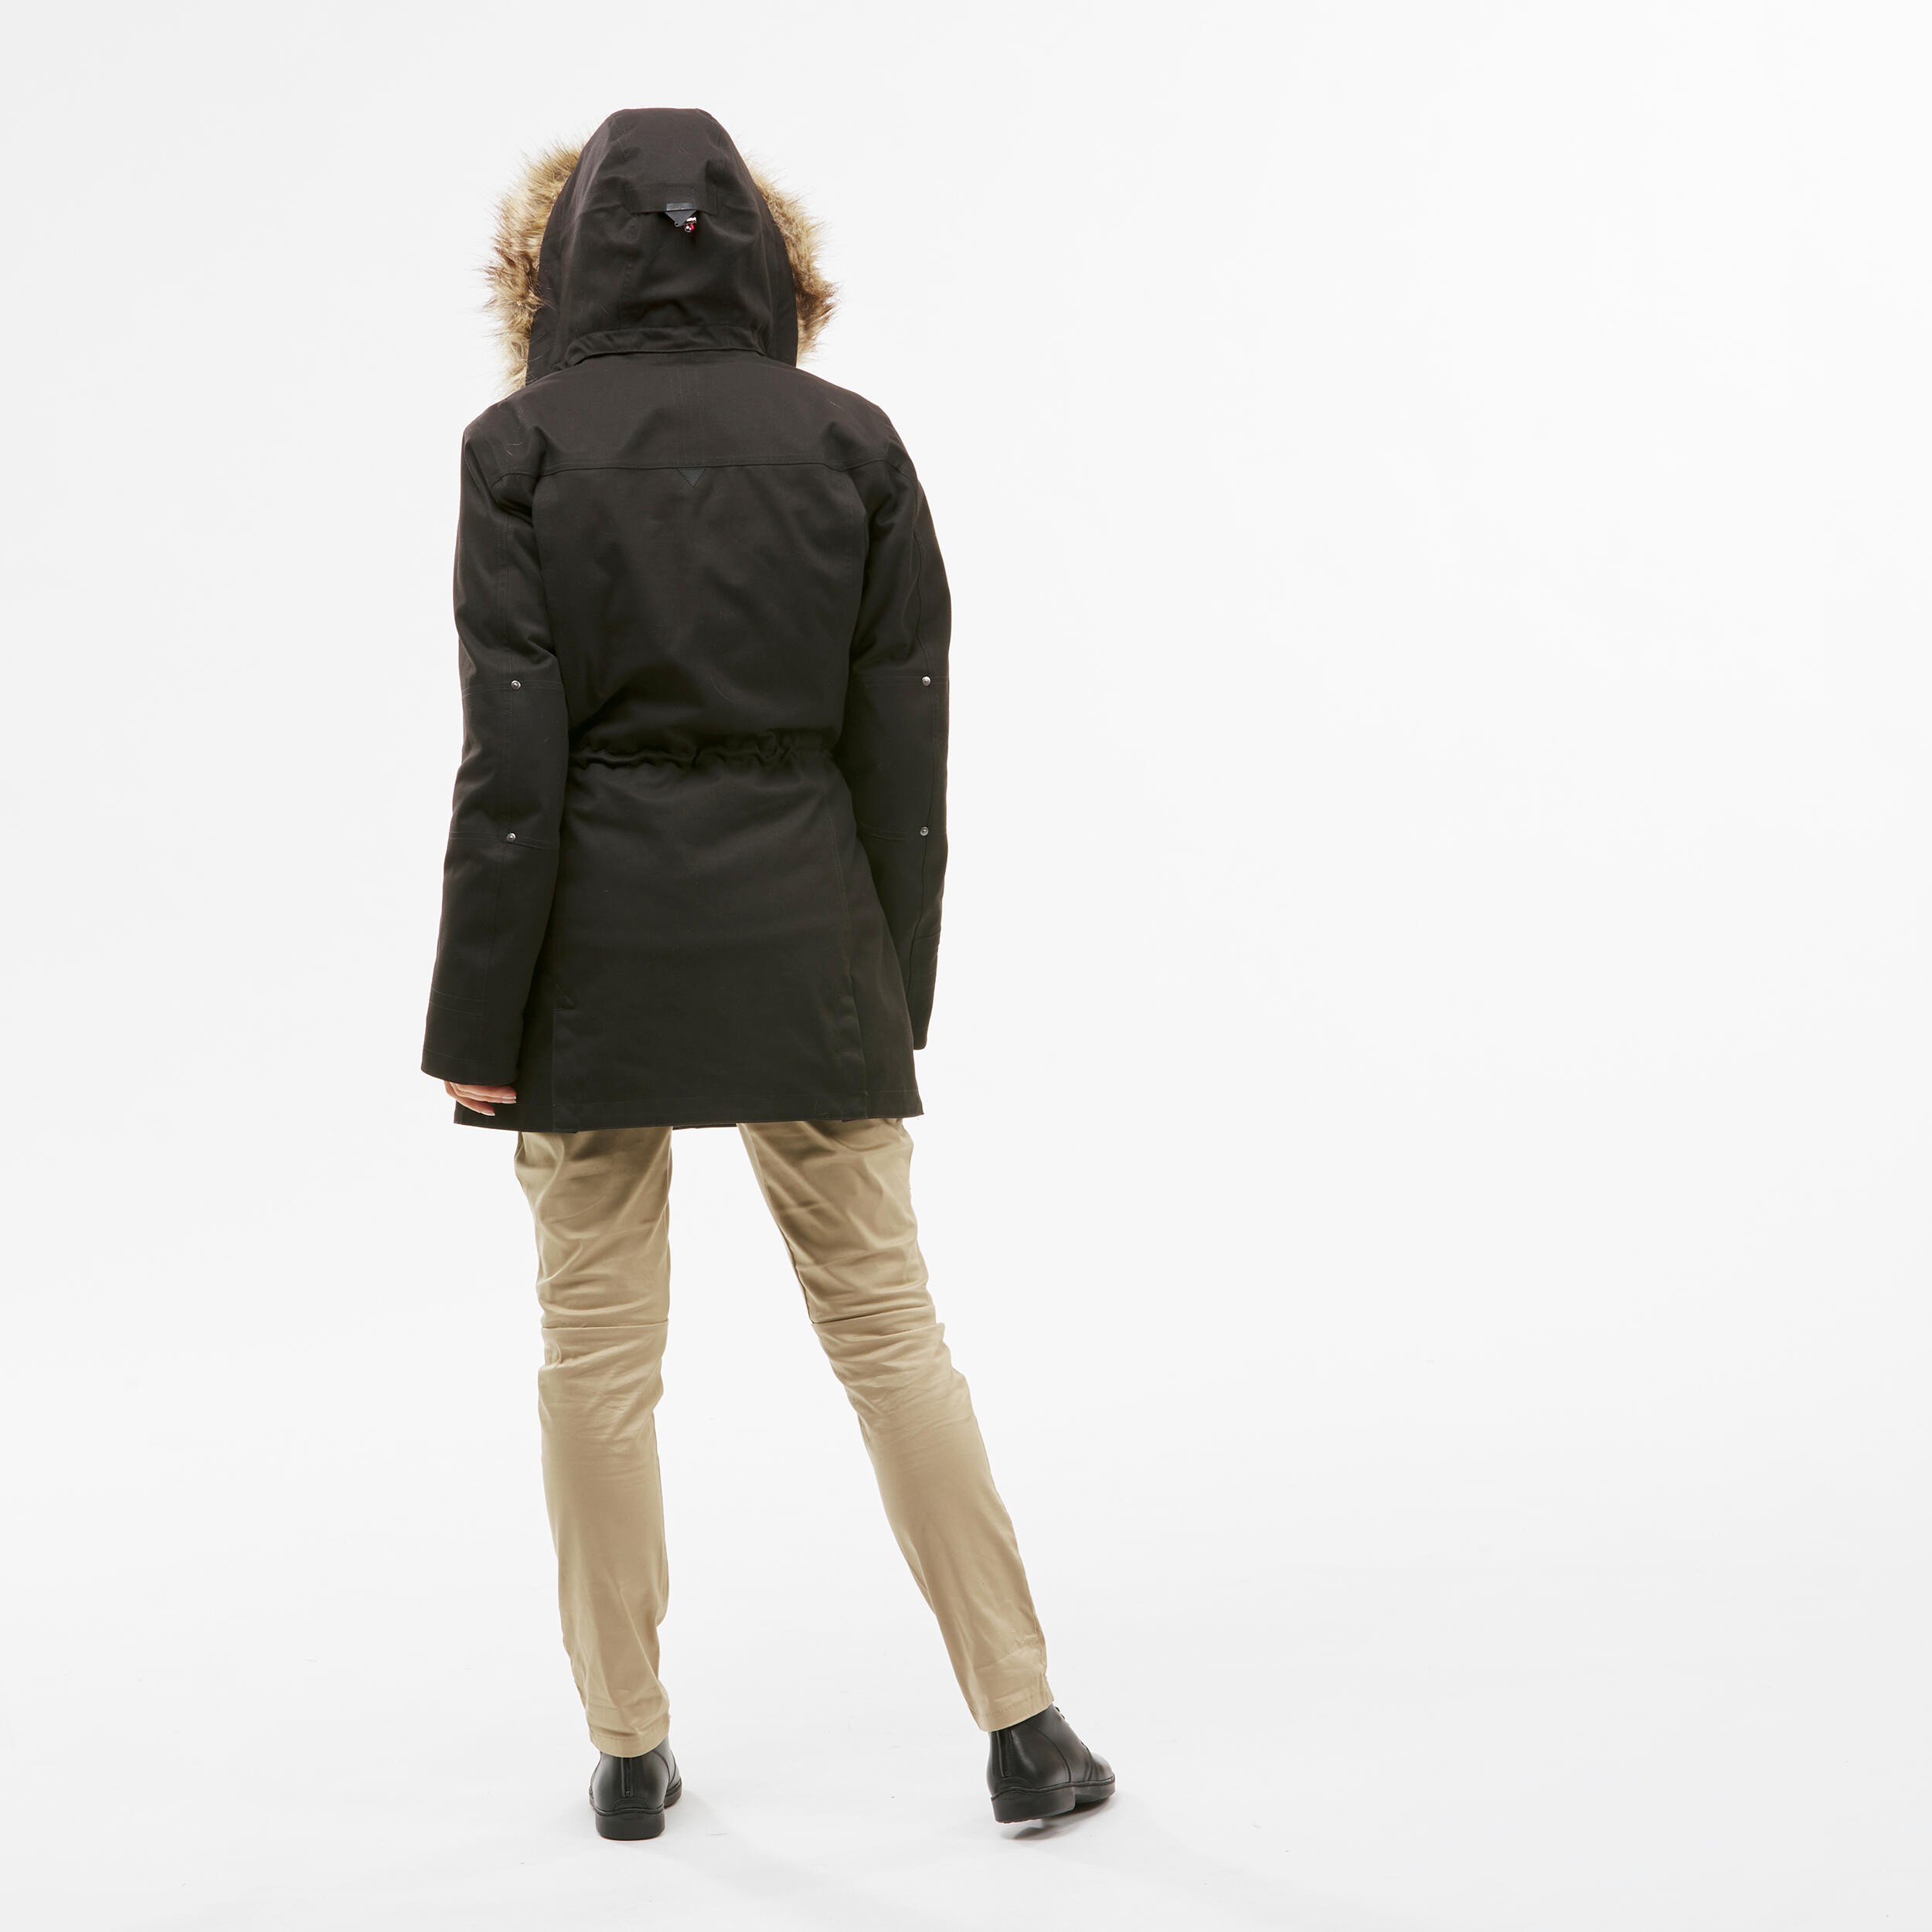 Manteau 3 en 1 femme – Travel 700 noir - FORCLAZ